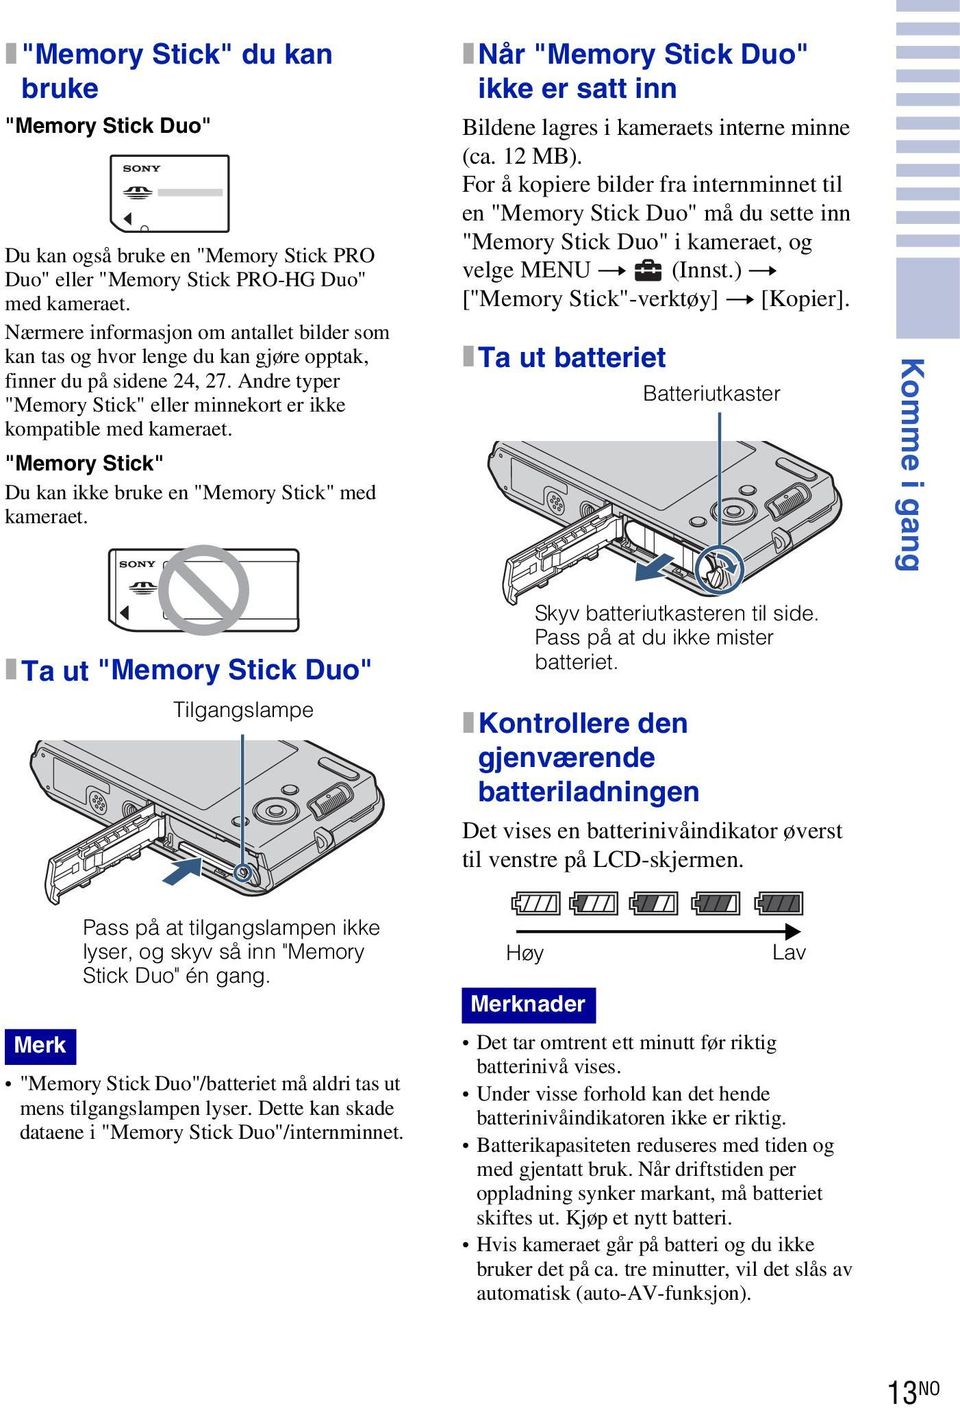 "Memory Stick" Du kan ikke bruke en "Memory Stick" med kameraet. x Når "Memory Stick Duo" ikke er satt inn Bildene lagres i kameraets interne minne (ca. 2 MB).